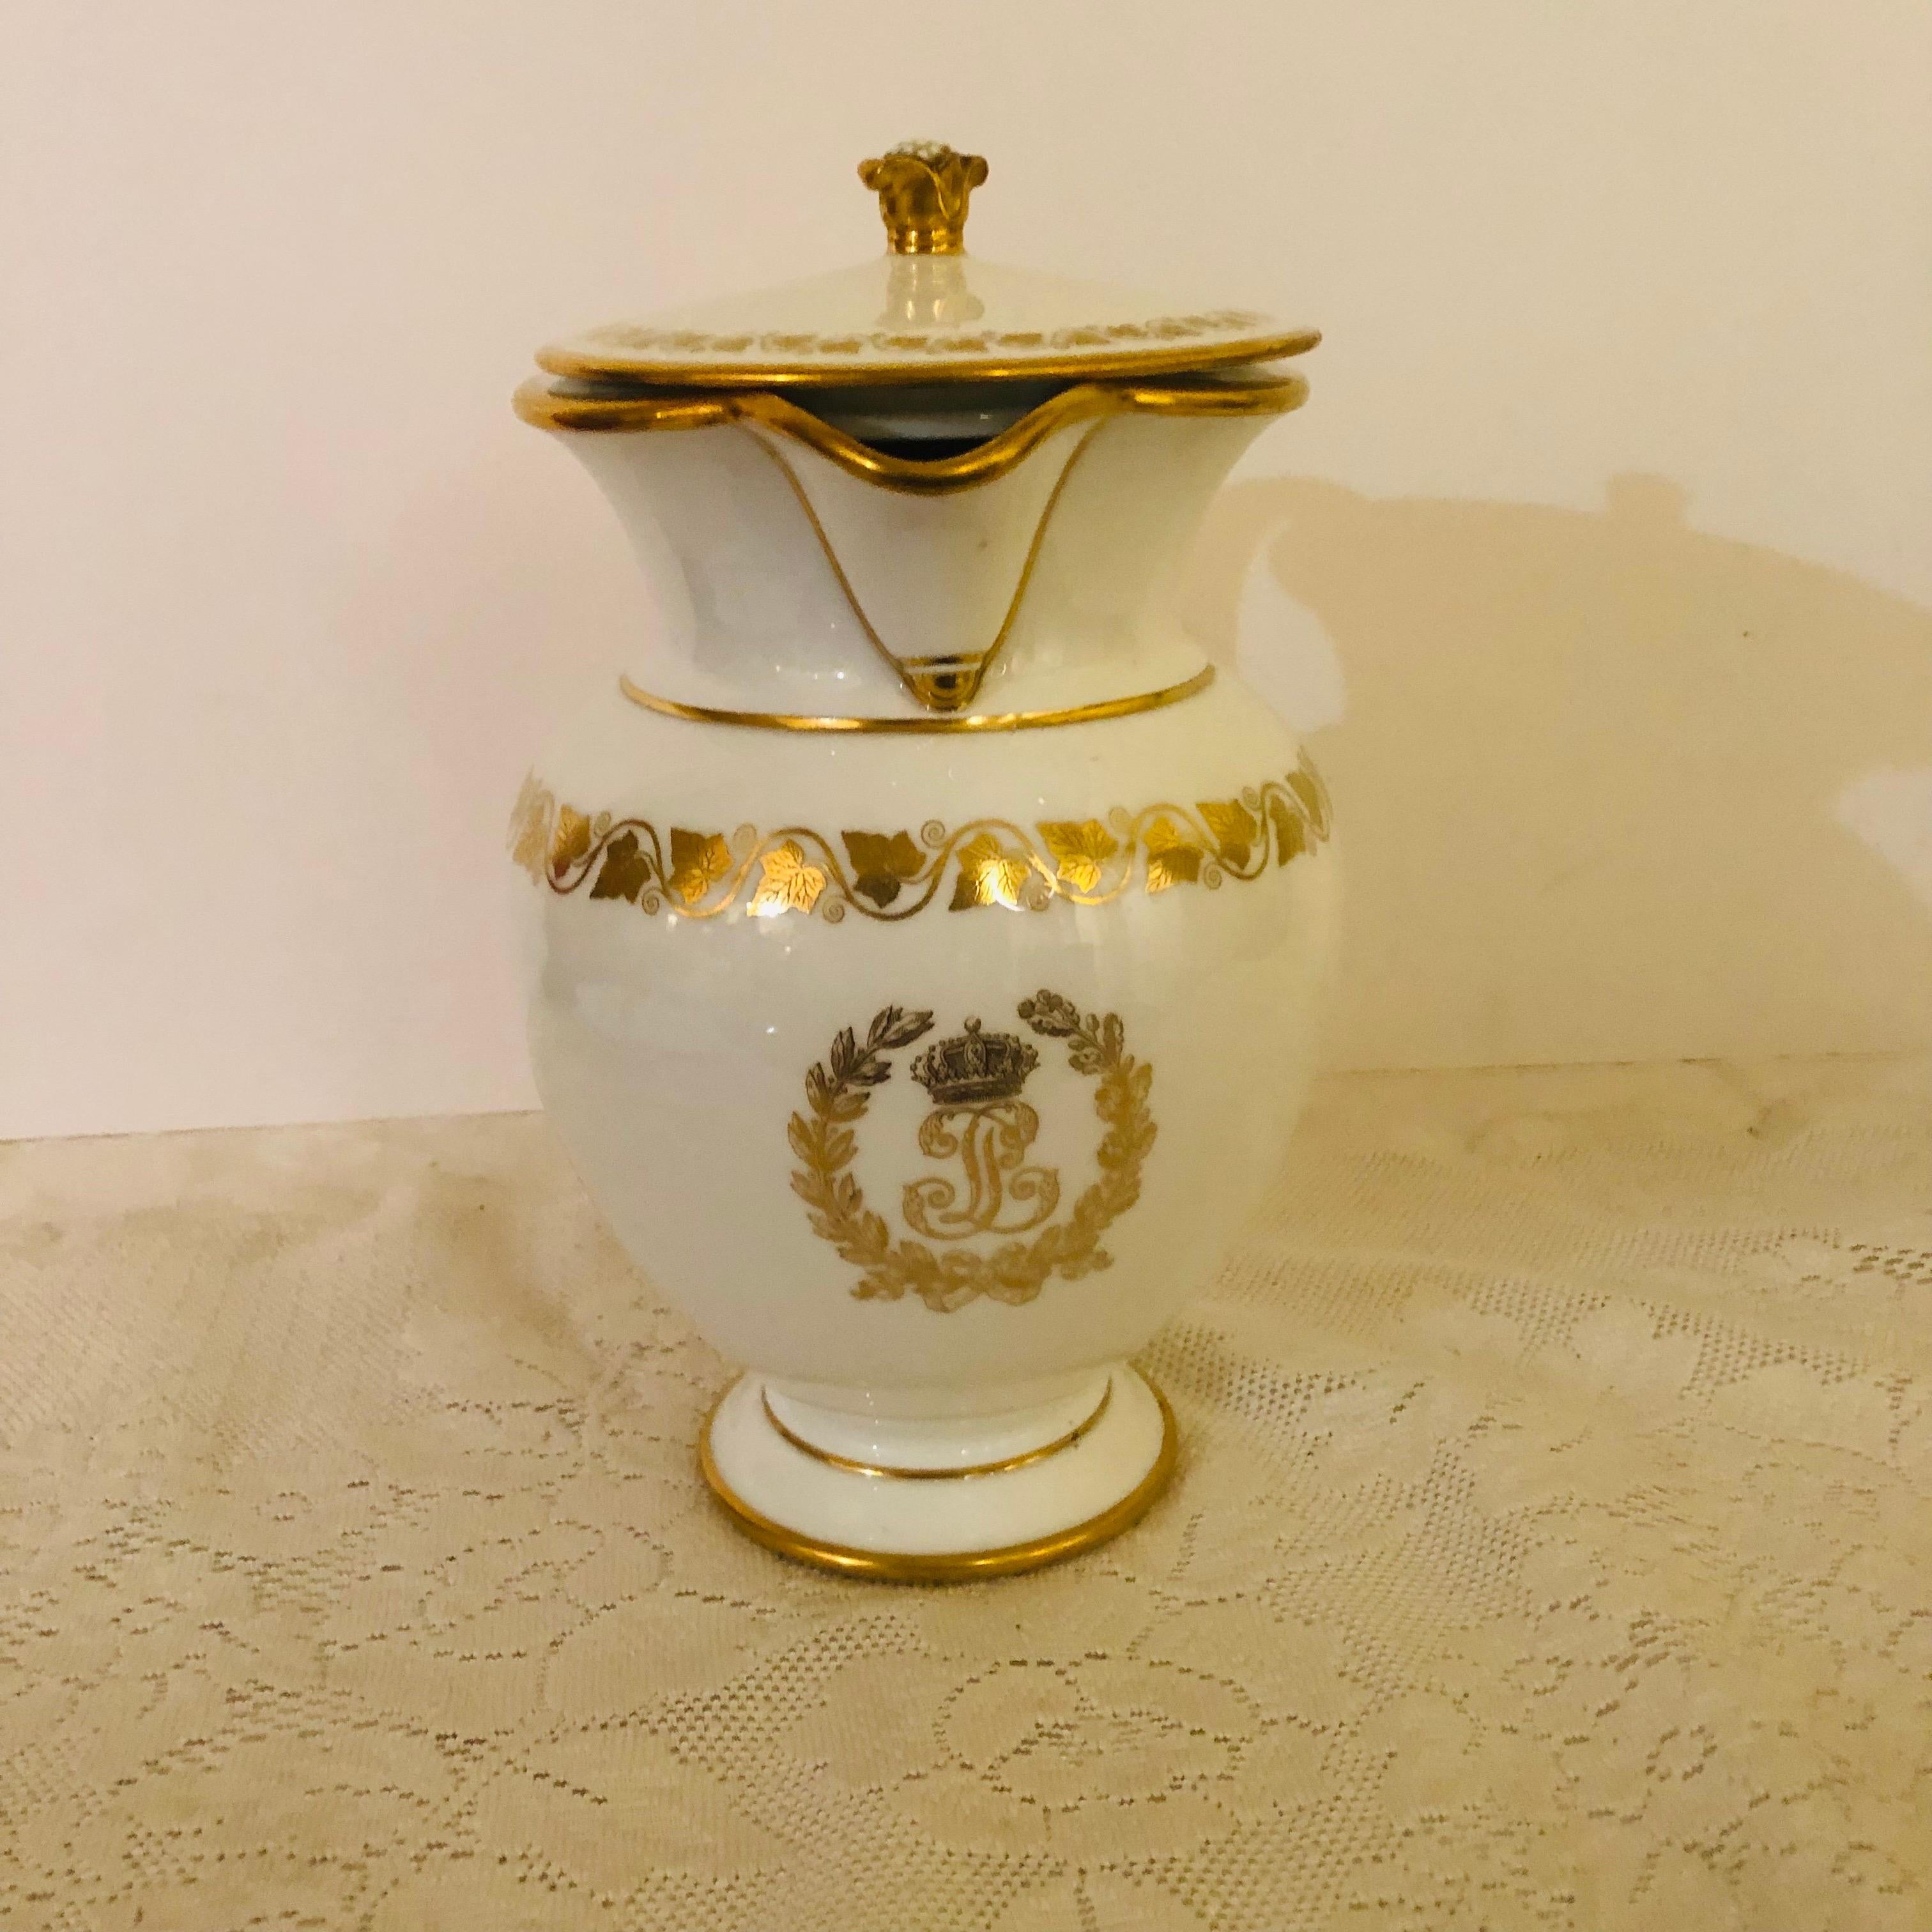 Dies ist ein fabelhafter, seltener Krug aus Sèvres mit weißem Grund und einem eleganten Monogramm in der Mitte, das König Louis Philippe für sein Chateau de Trianon anfertigen ließ. Das goldene Monogramm LP ist von einem goldenen Blattkranz umgeben.